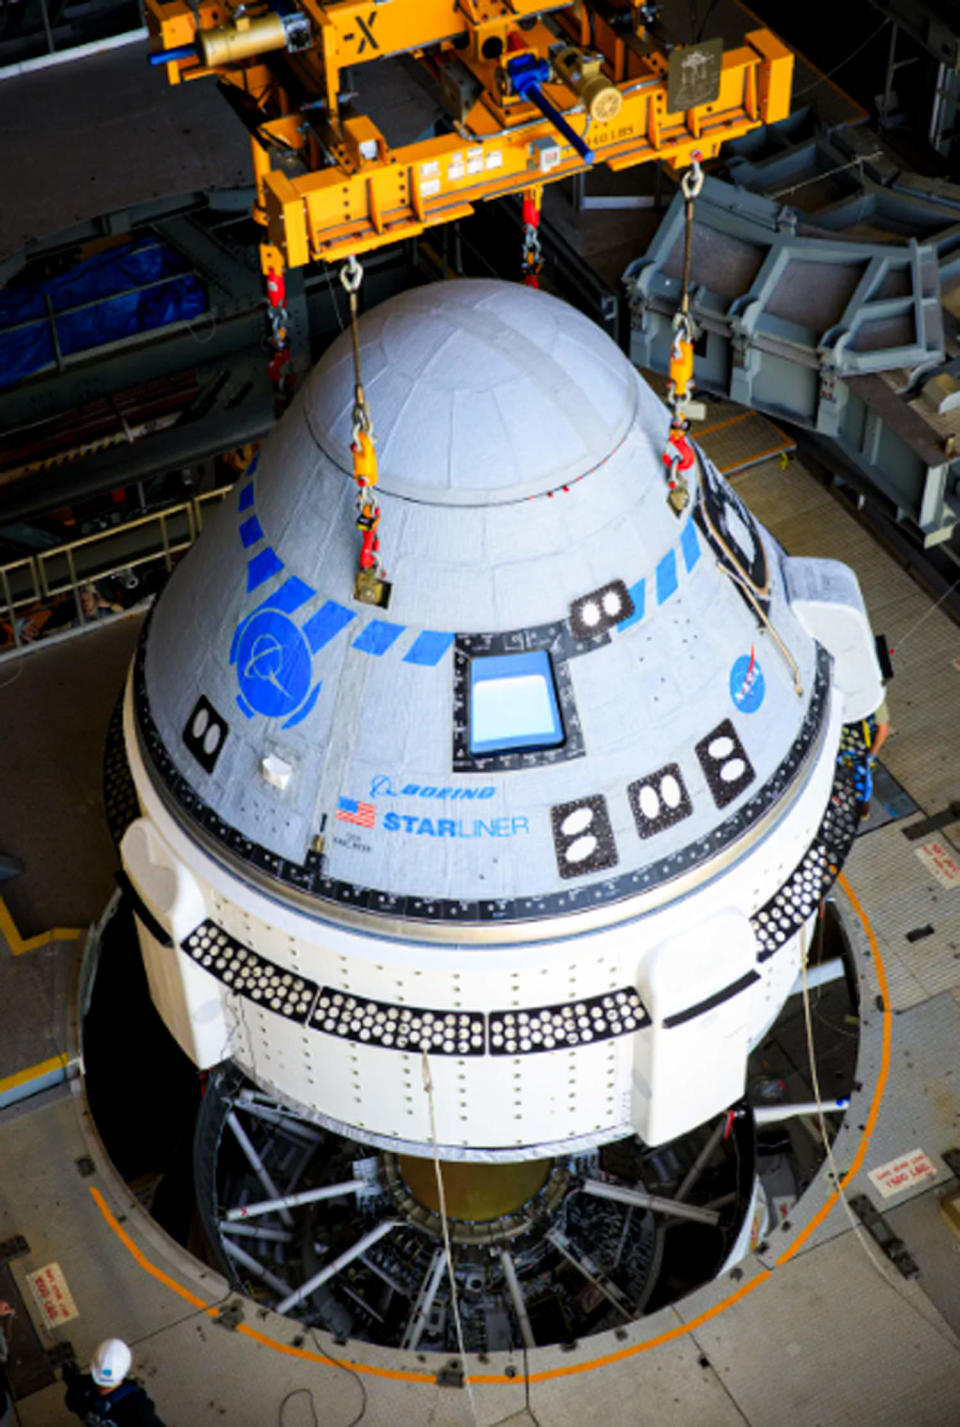 The Boeing CST-100 Starliner spacecraft (Frank Michaux / NASA)